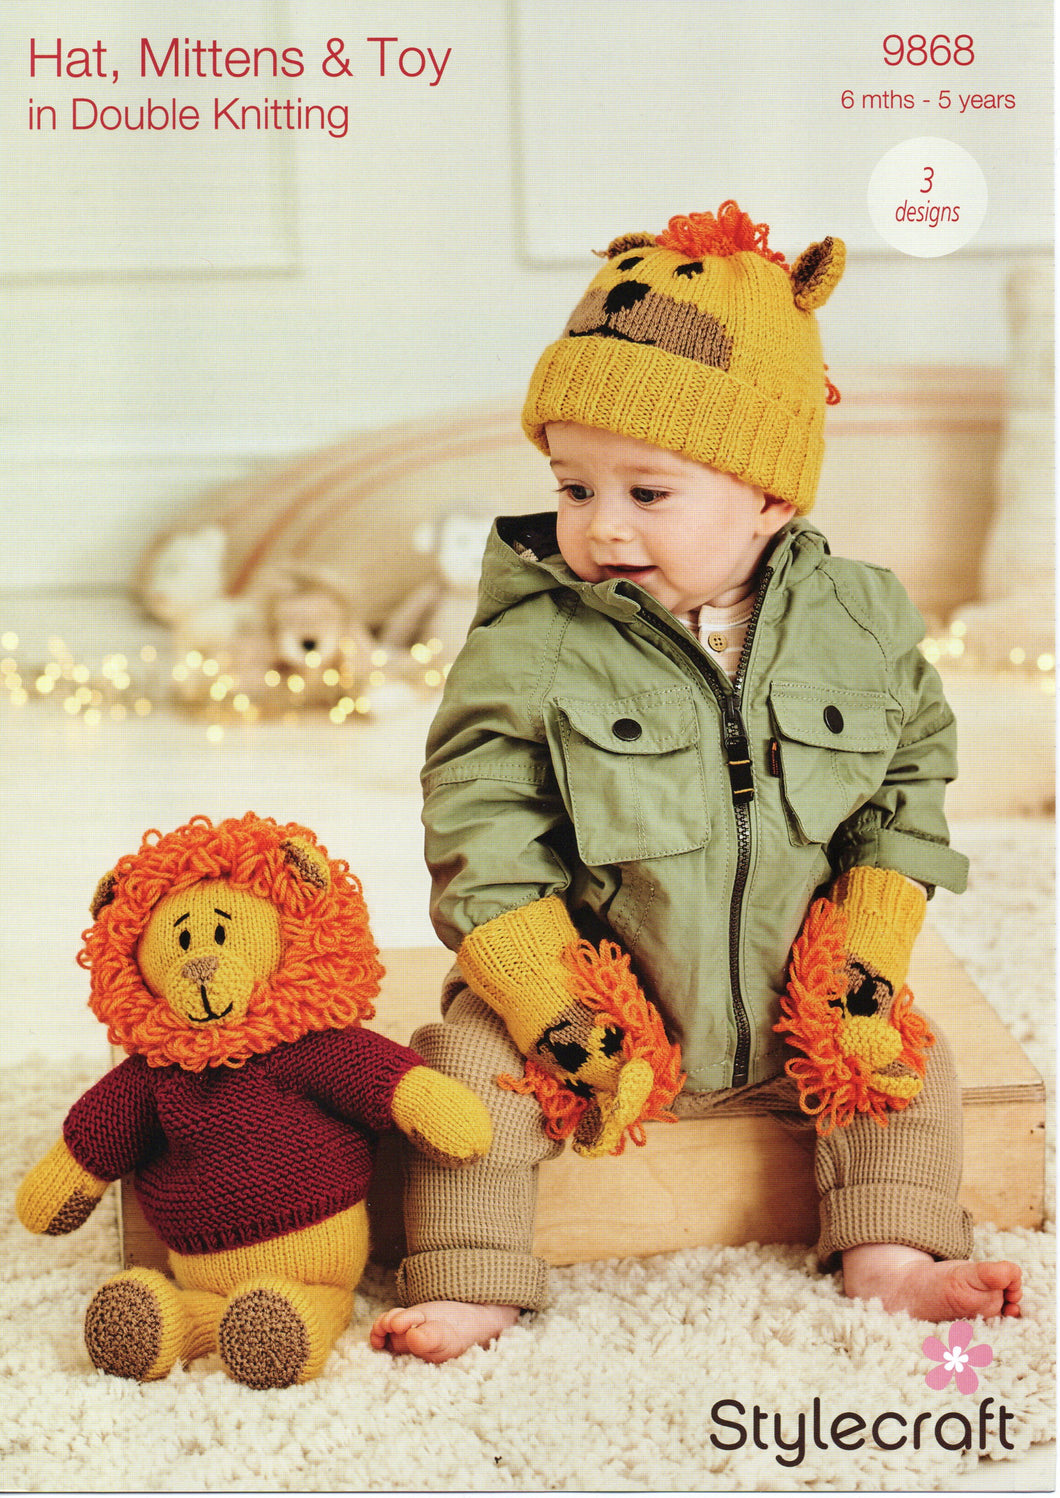 Knitting Pattern Leaflet Stylecraft 9868 DK Kids Lion Hat / Mittens / Toy